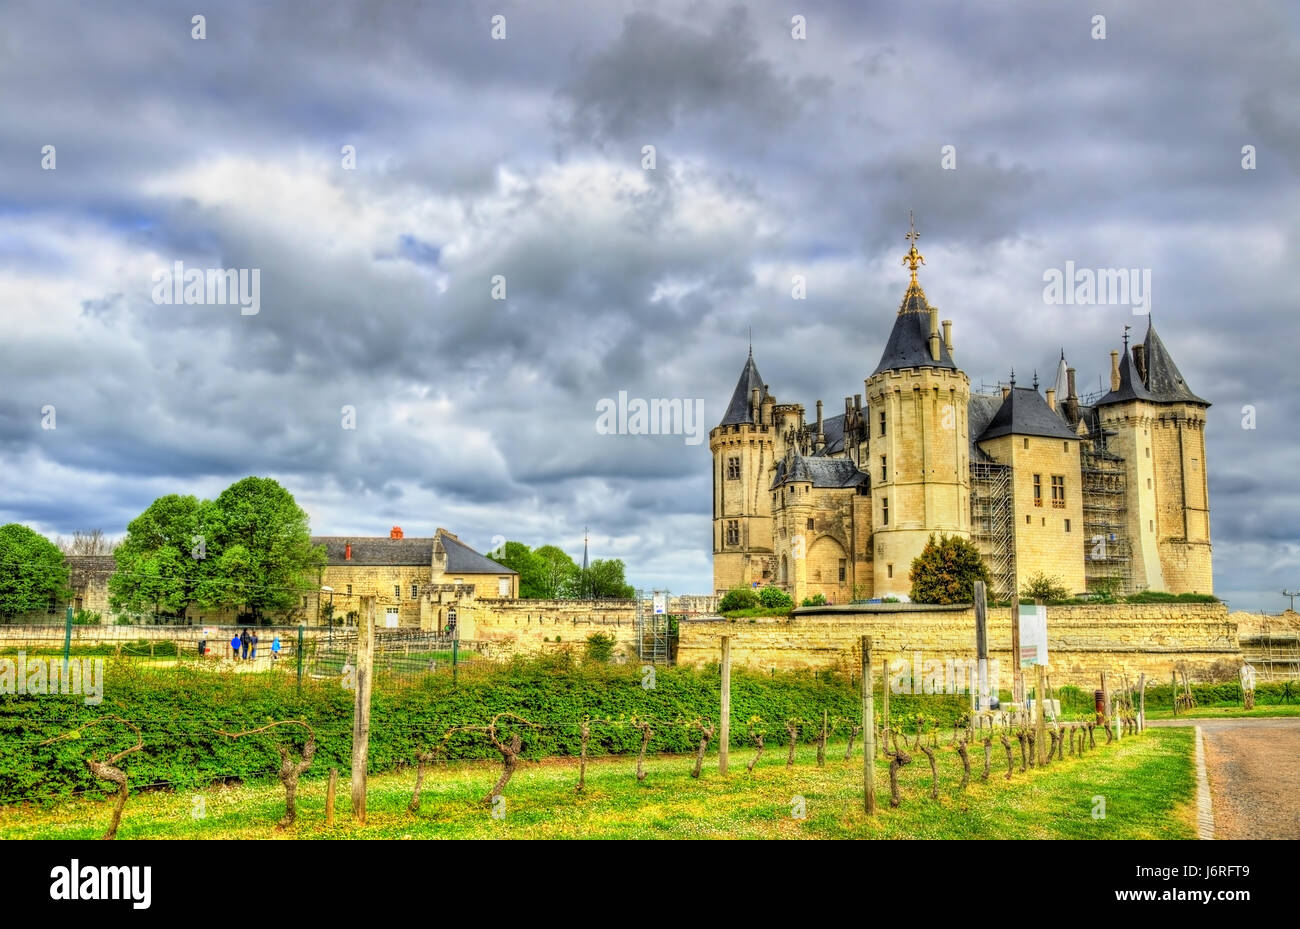 Château de Saumur dans la vallée de la Loire, France Banque D'Images